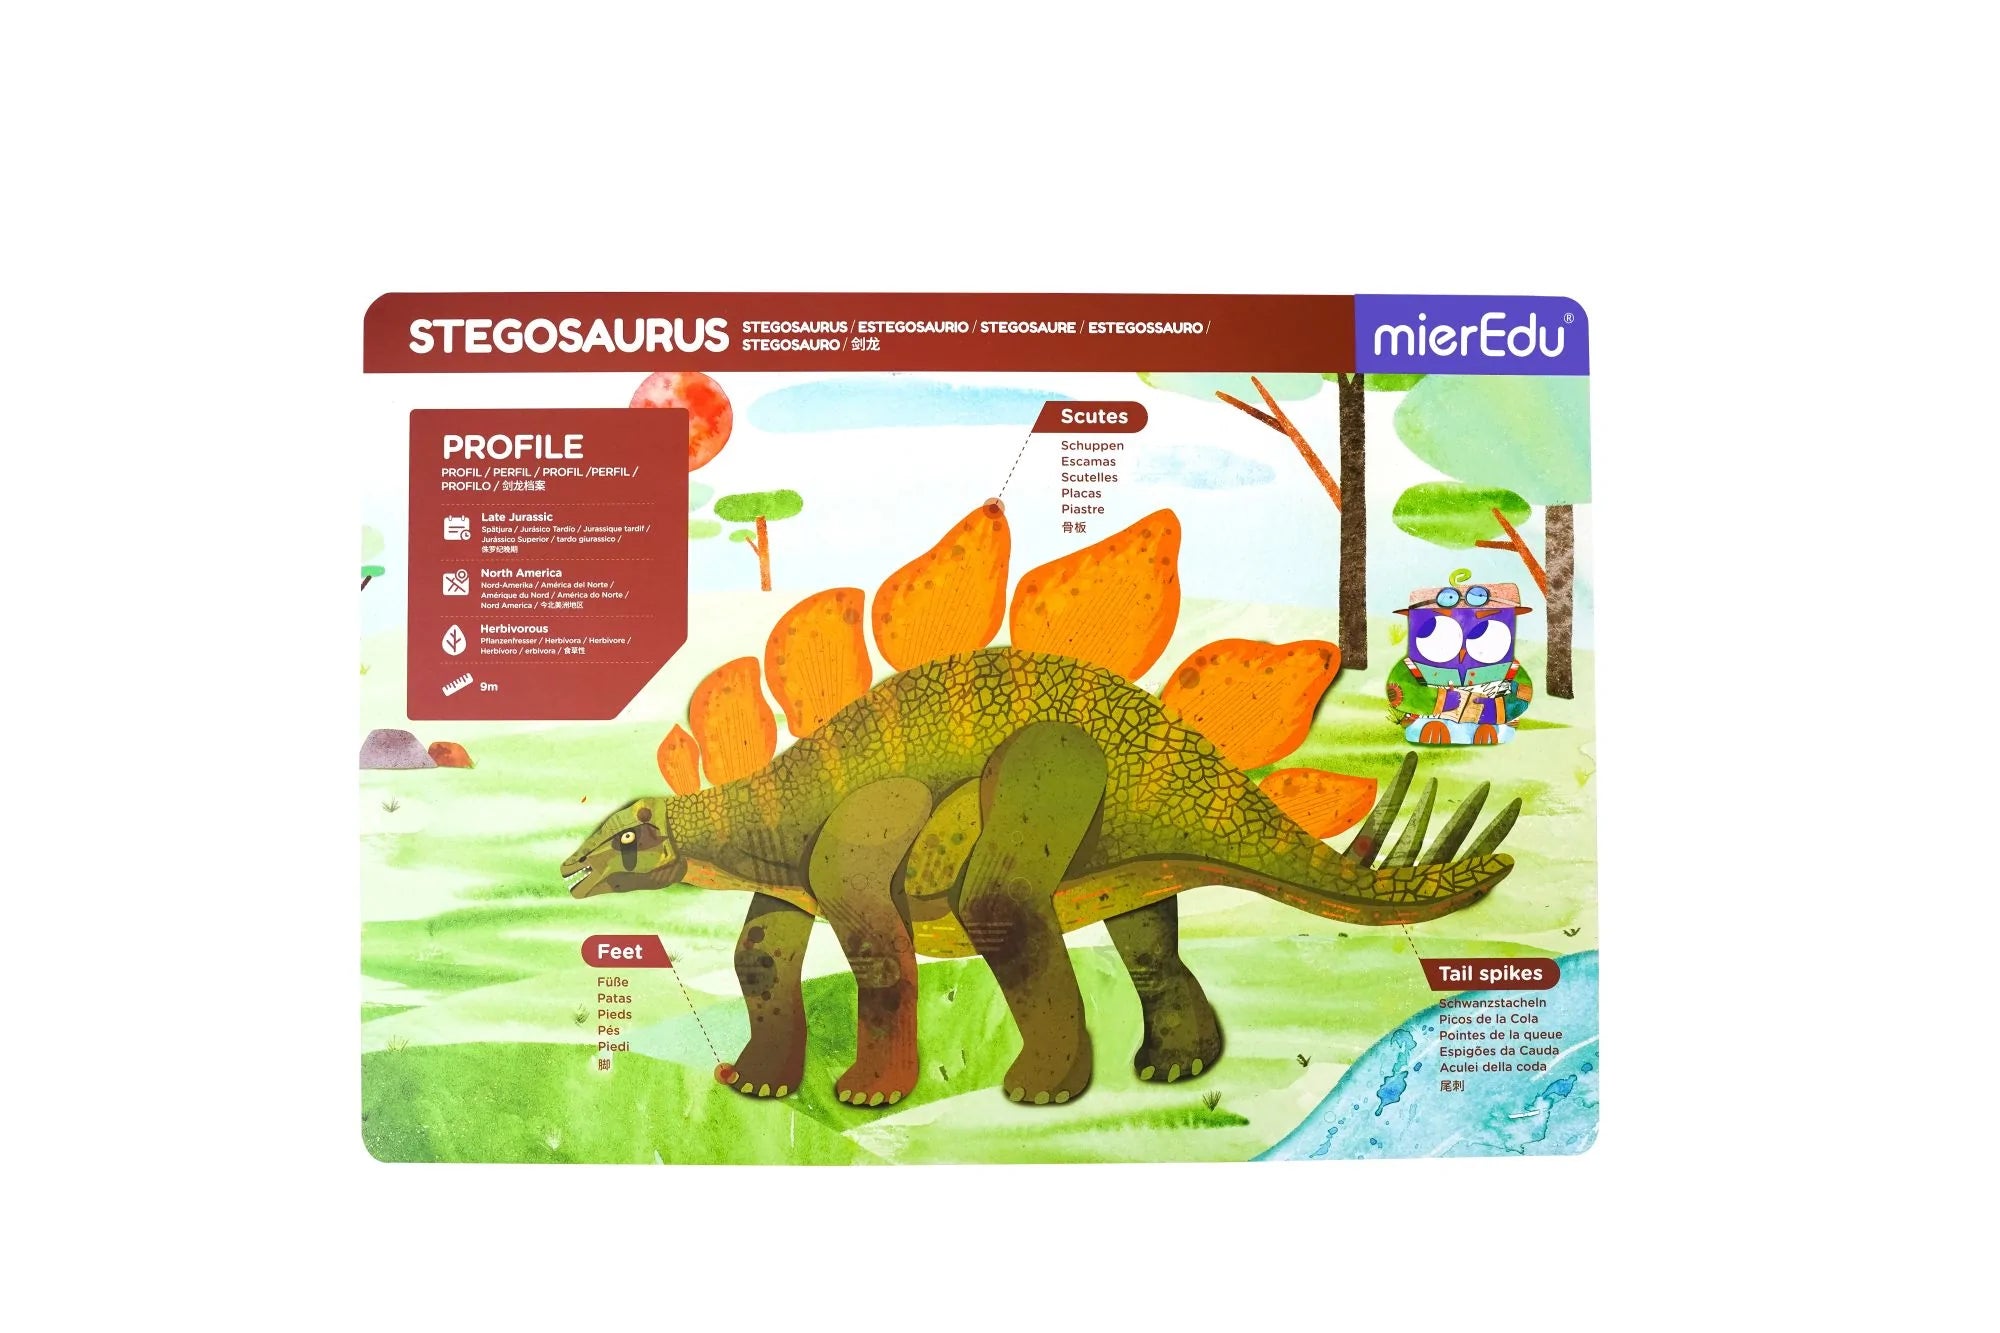 mierEdu | Magnetic Pad - Stegosaurus